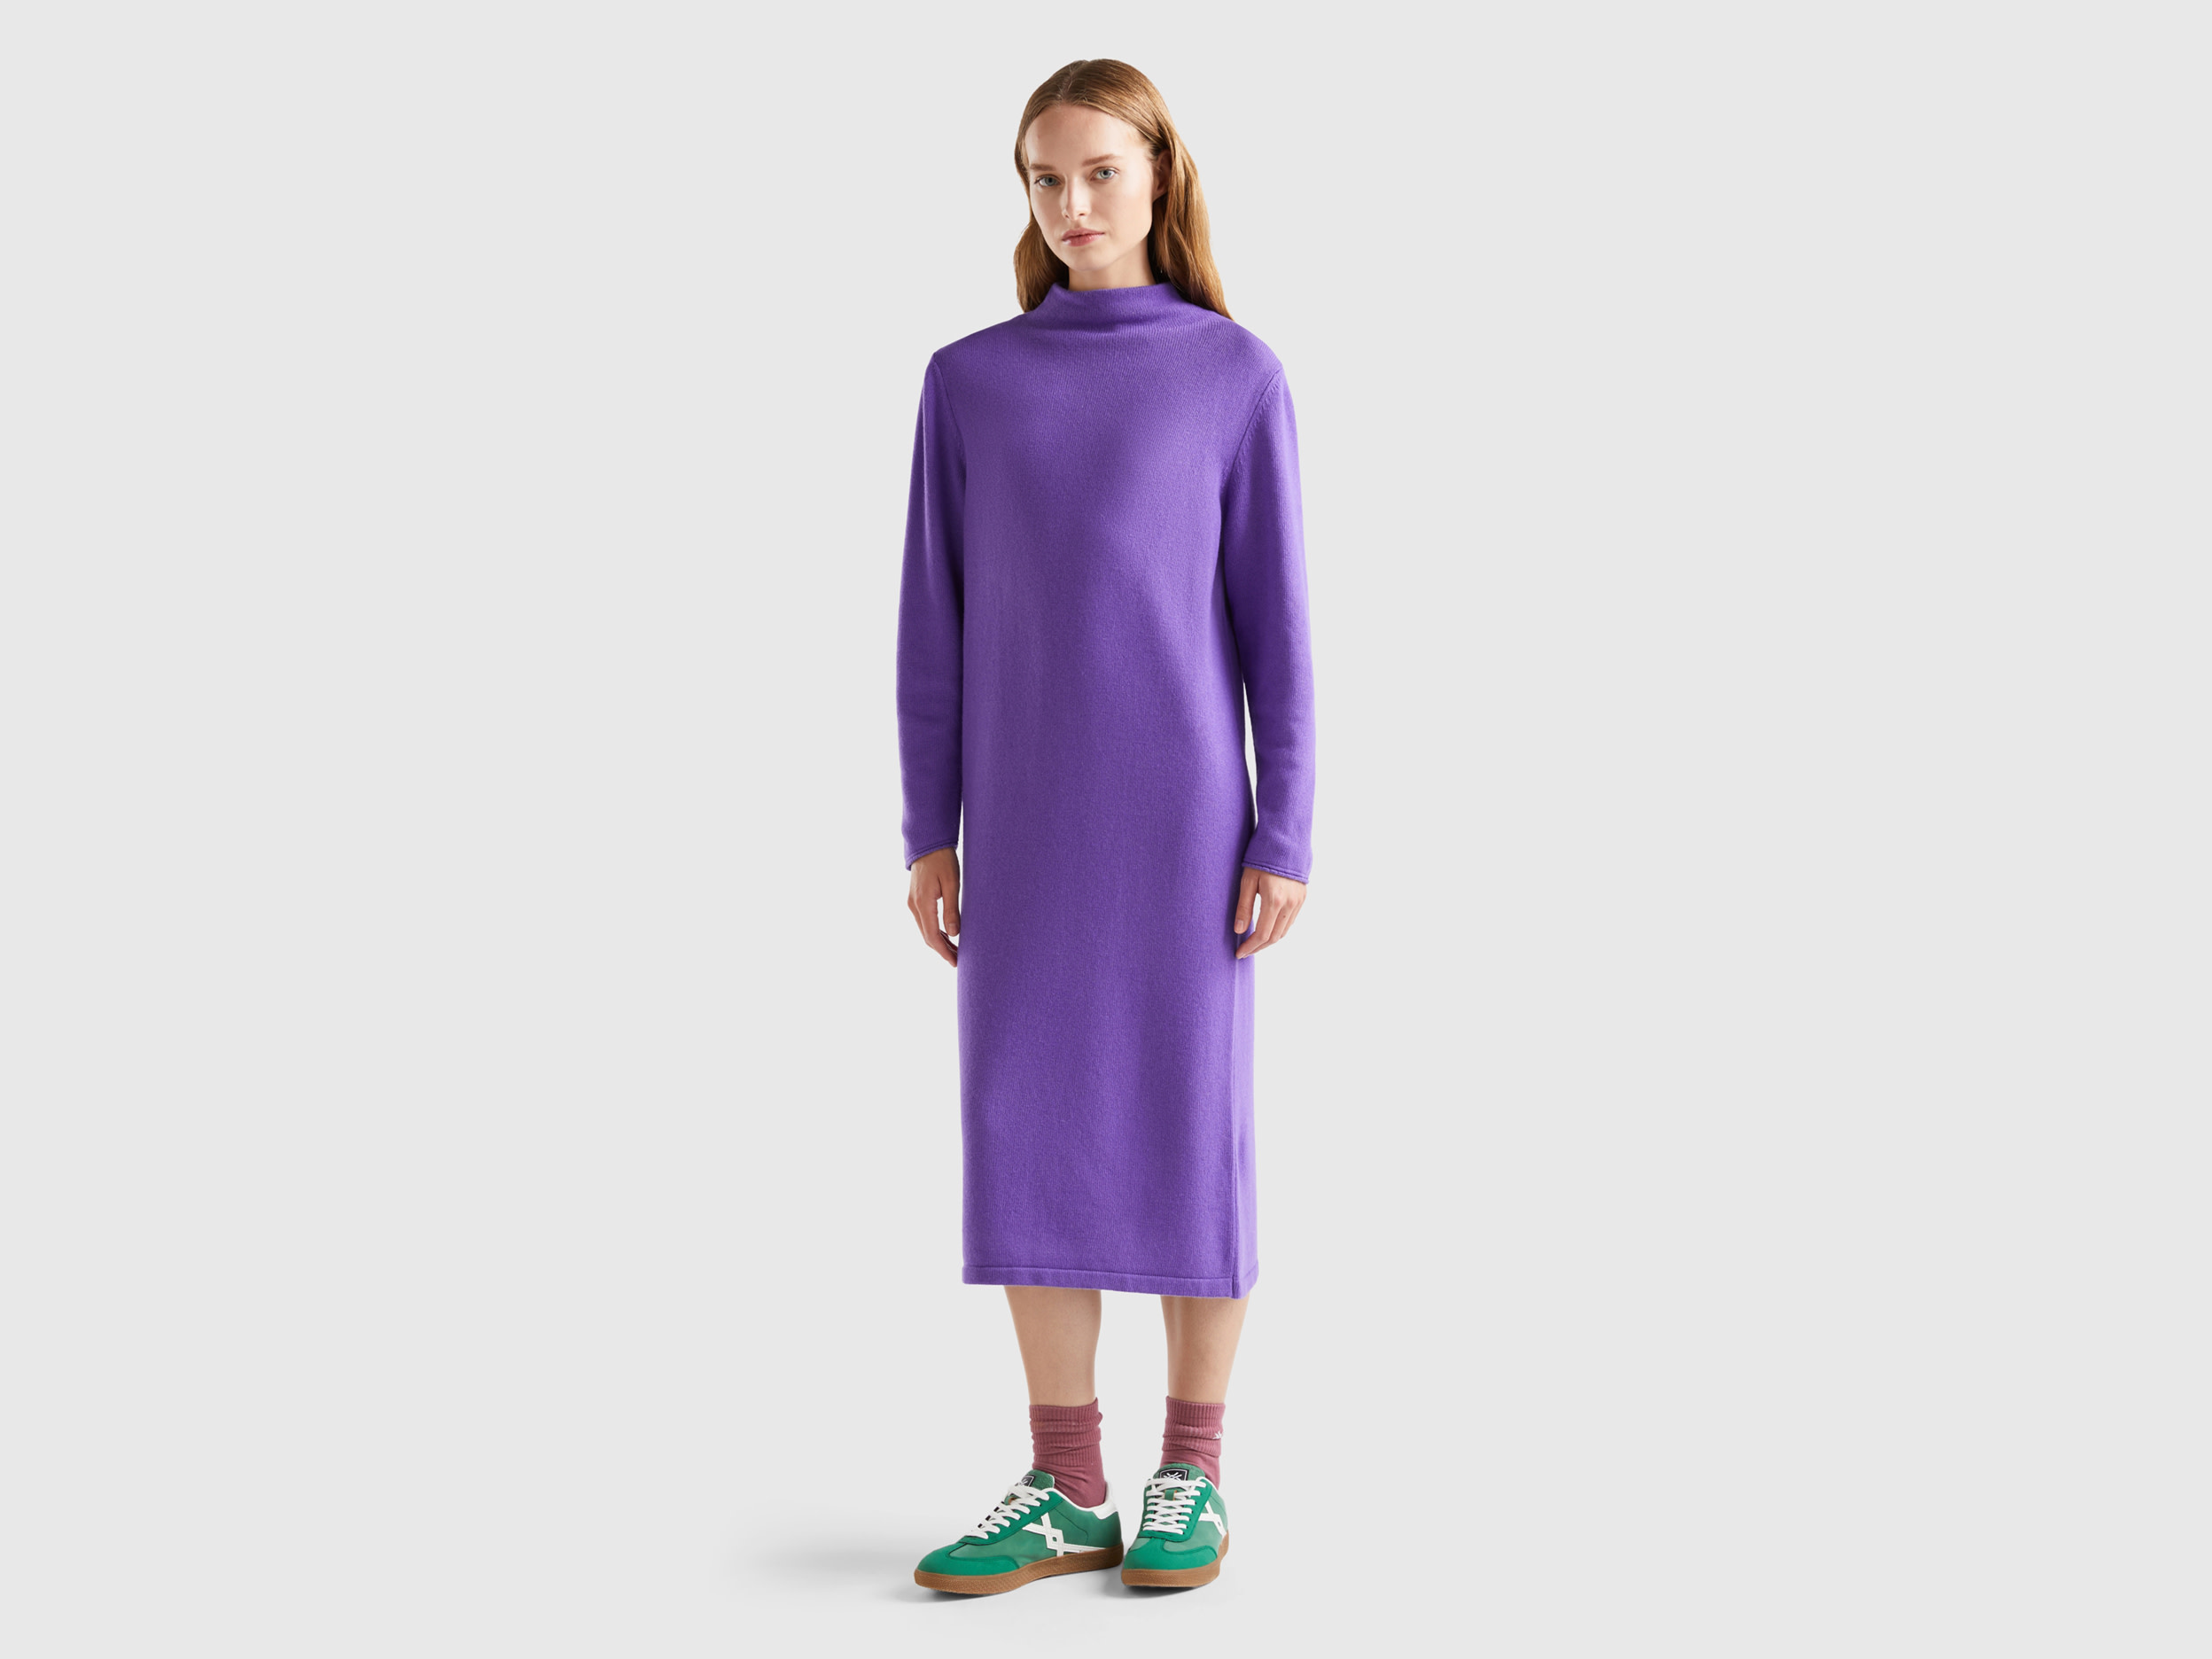 Benetton, Cashmere Blend Midi Dress, size M, Violet, Women